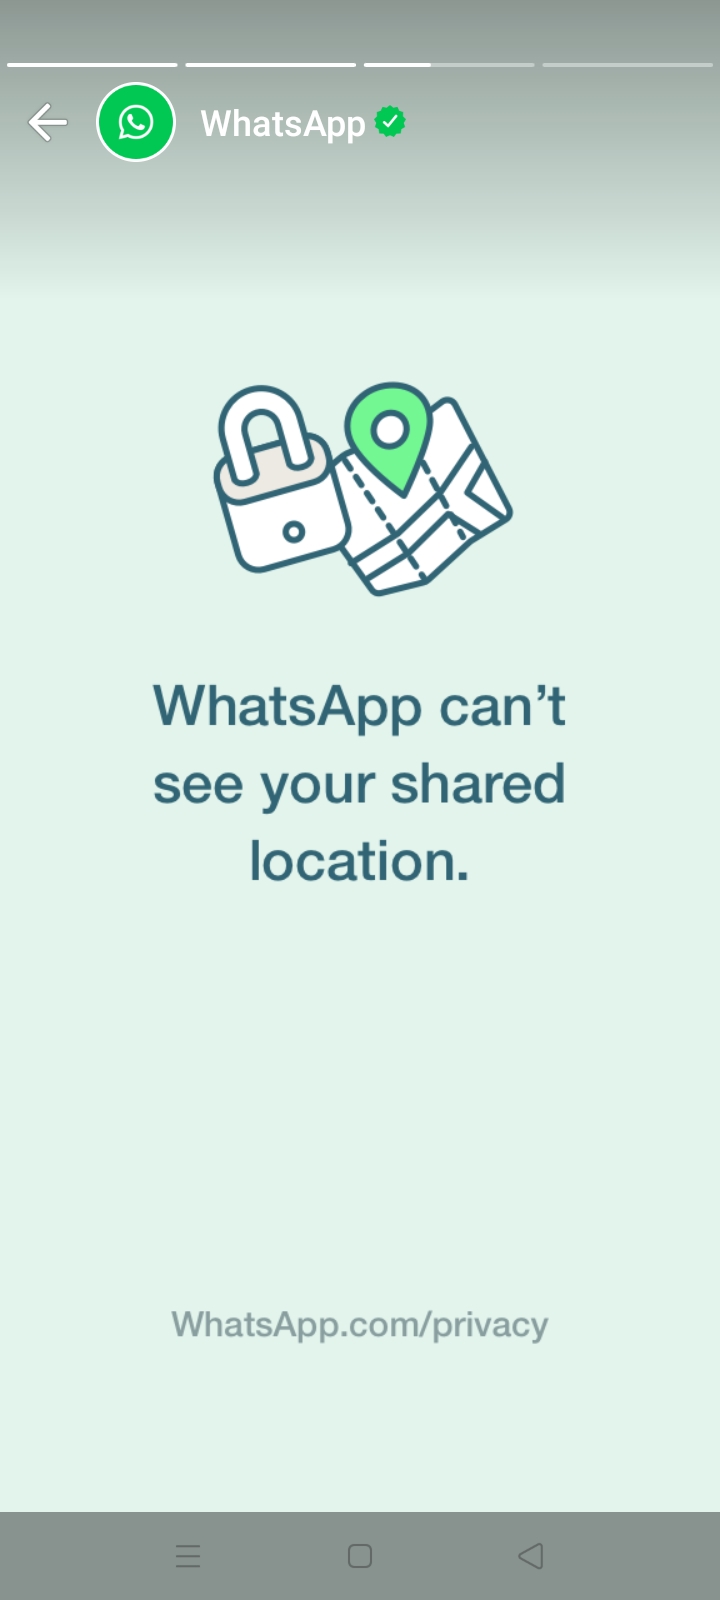 whatsapp-privacy-3.jfif